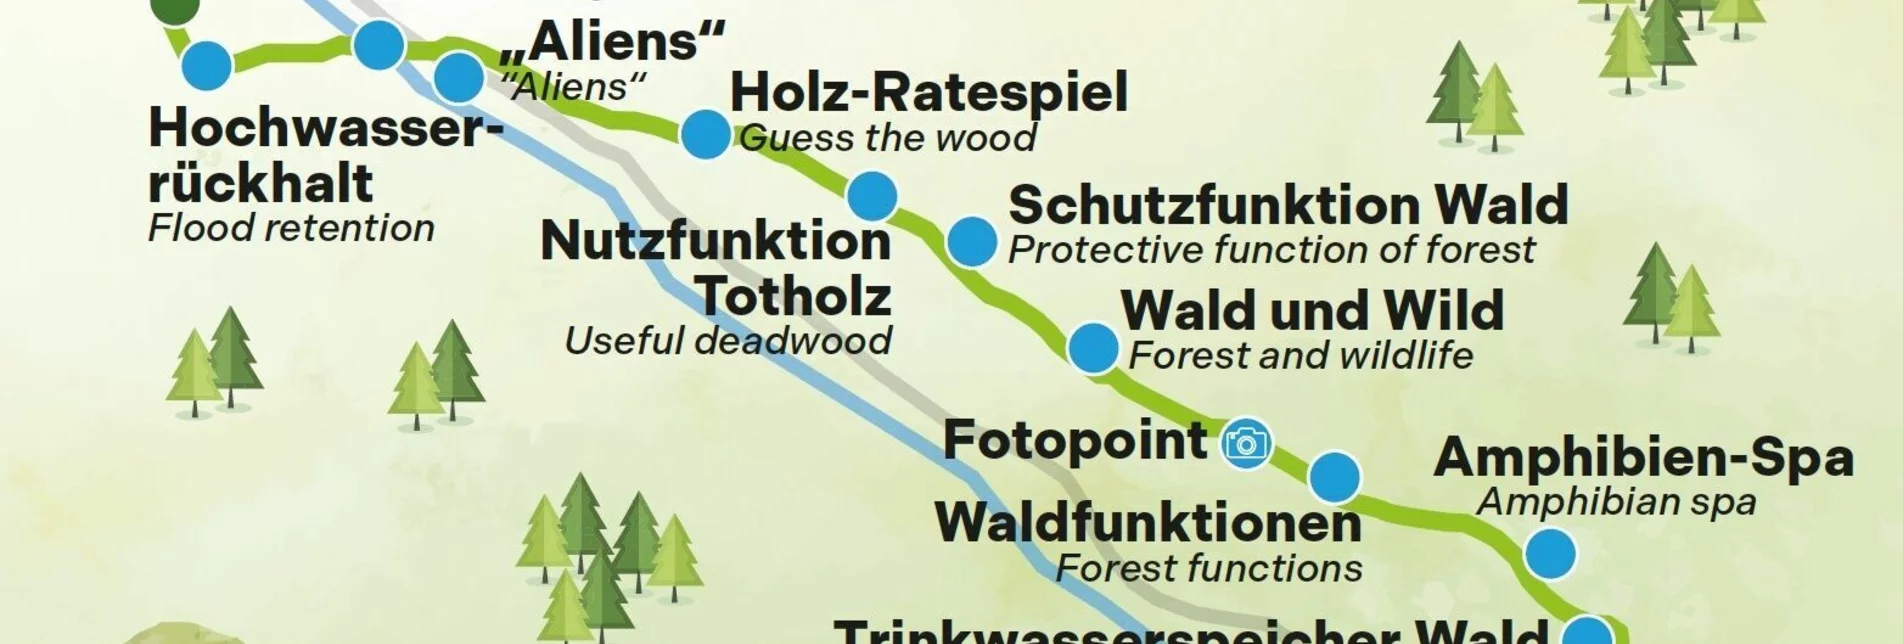 Themen- und Lehrpfad Themenweg Augstbach - Touren-Impression #1 | © Gemeinde Altaussee